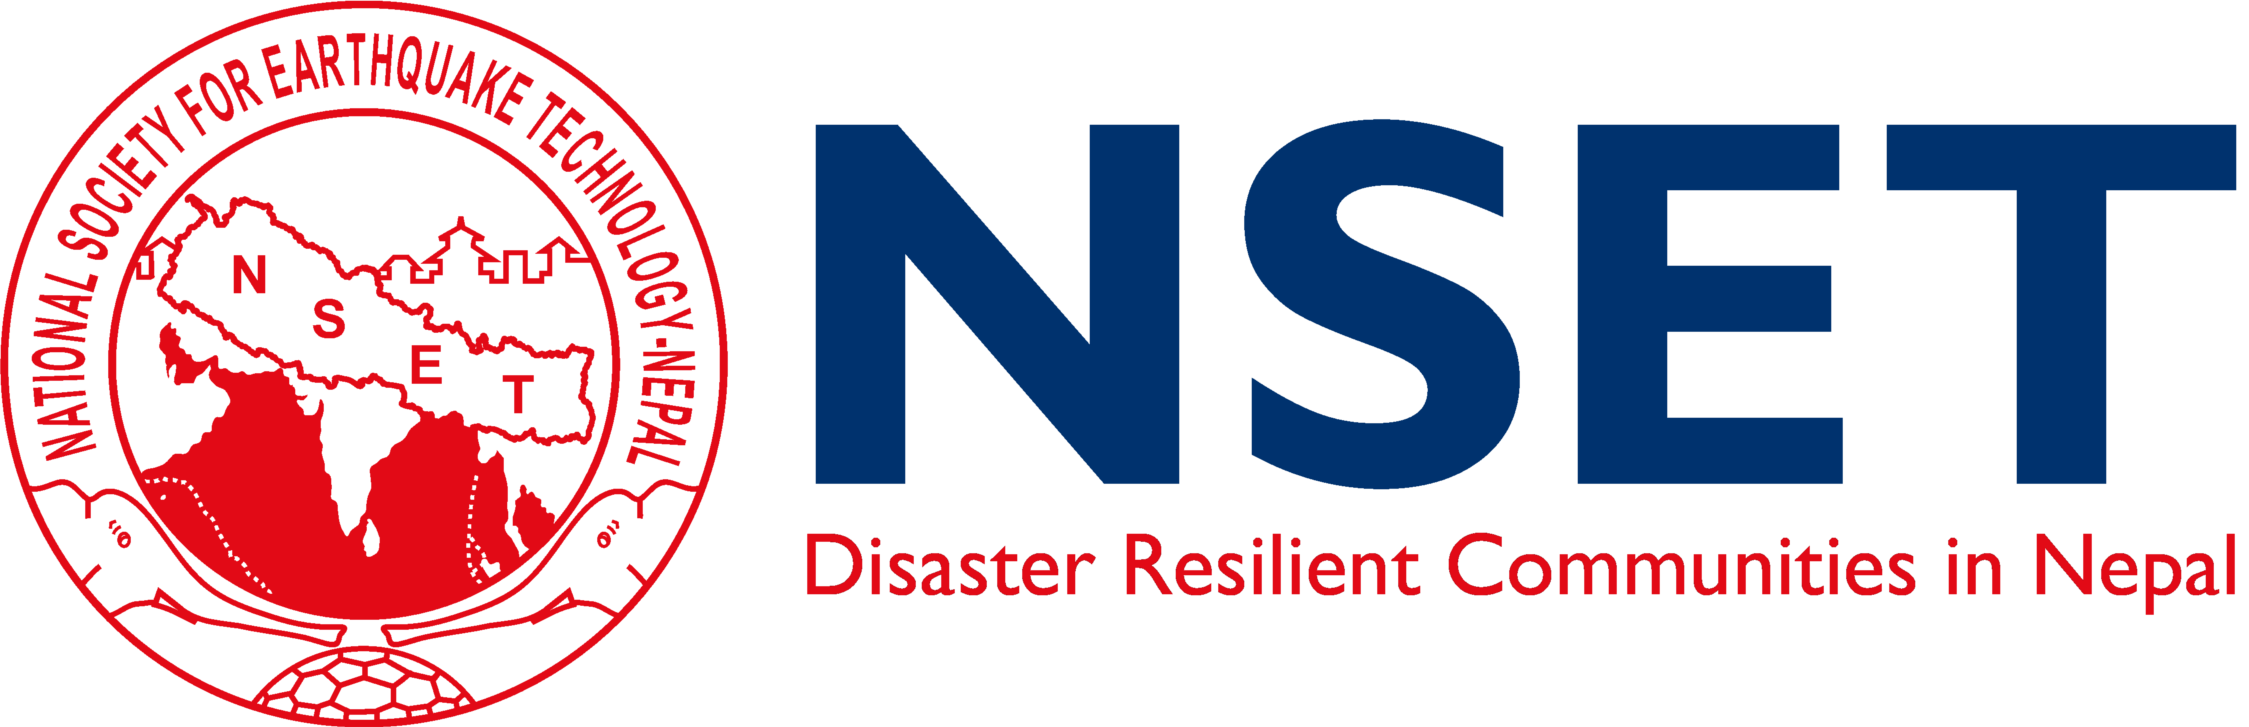 NSET Logo